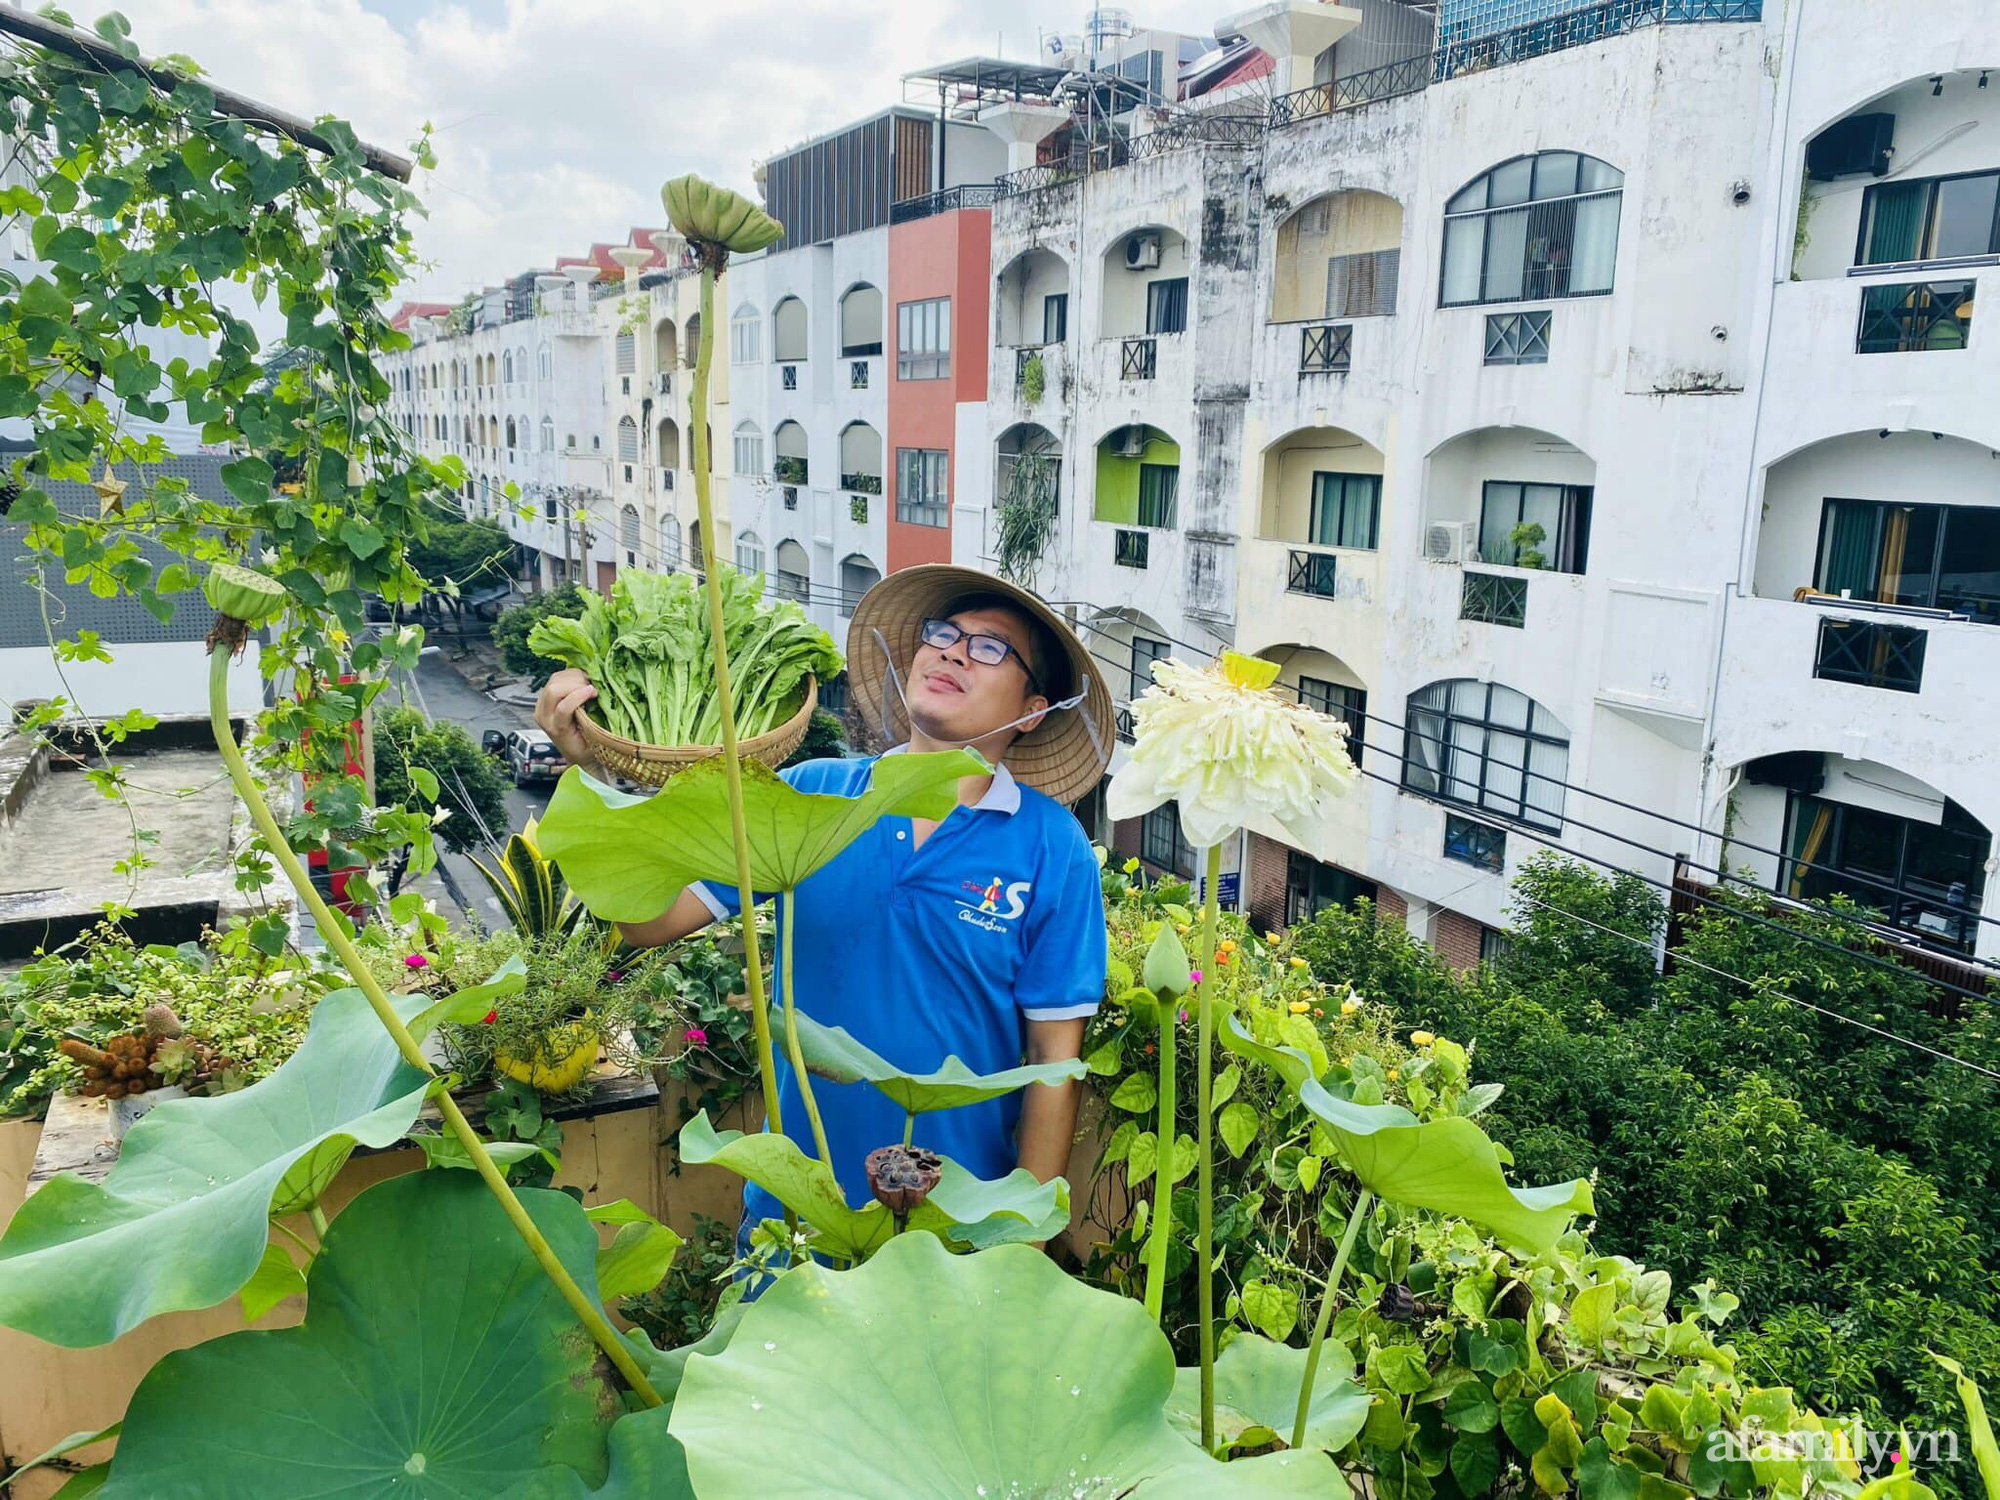 Sân thượng 20m2 xanh mướt có đủ rau, hoa, góc thưởng trà thư giãn ở Sài Gòn - Ảnh 1.